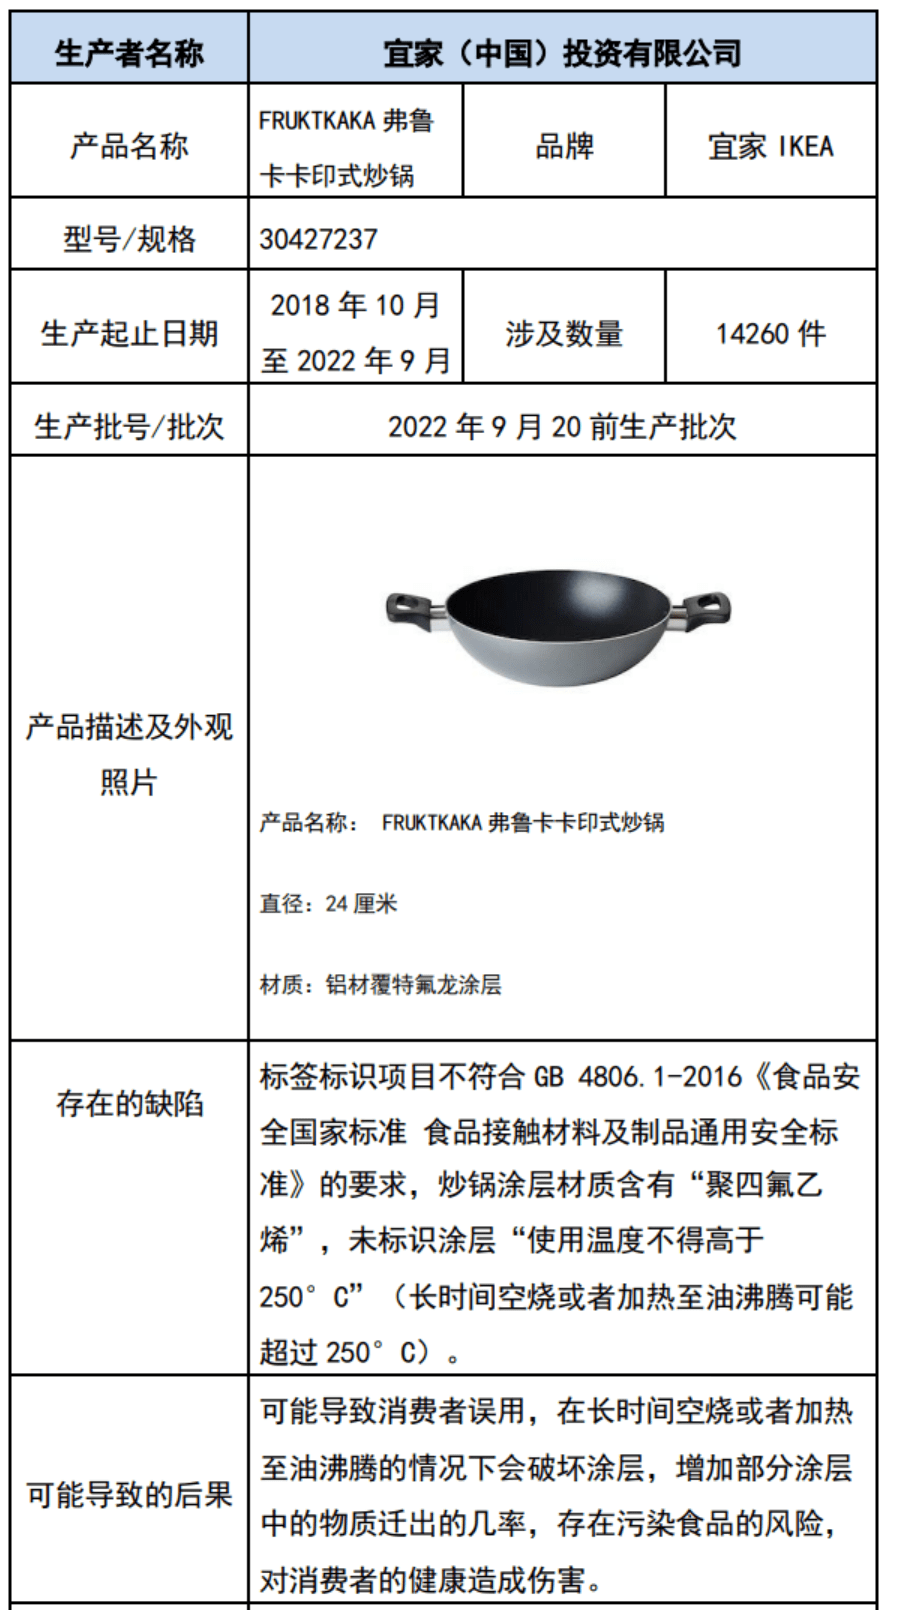 未按要求标识使用温度，宜家召回弗鲁卡卡印式炒锅、坤蒂格筷子